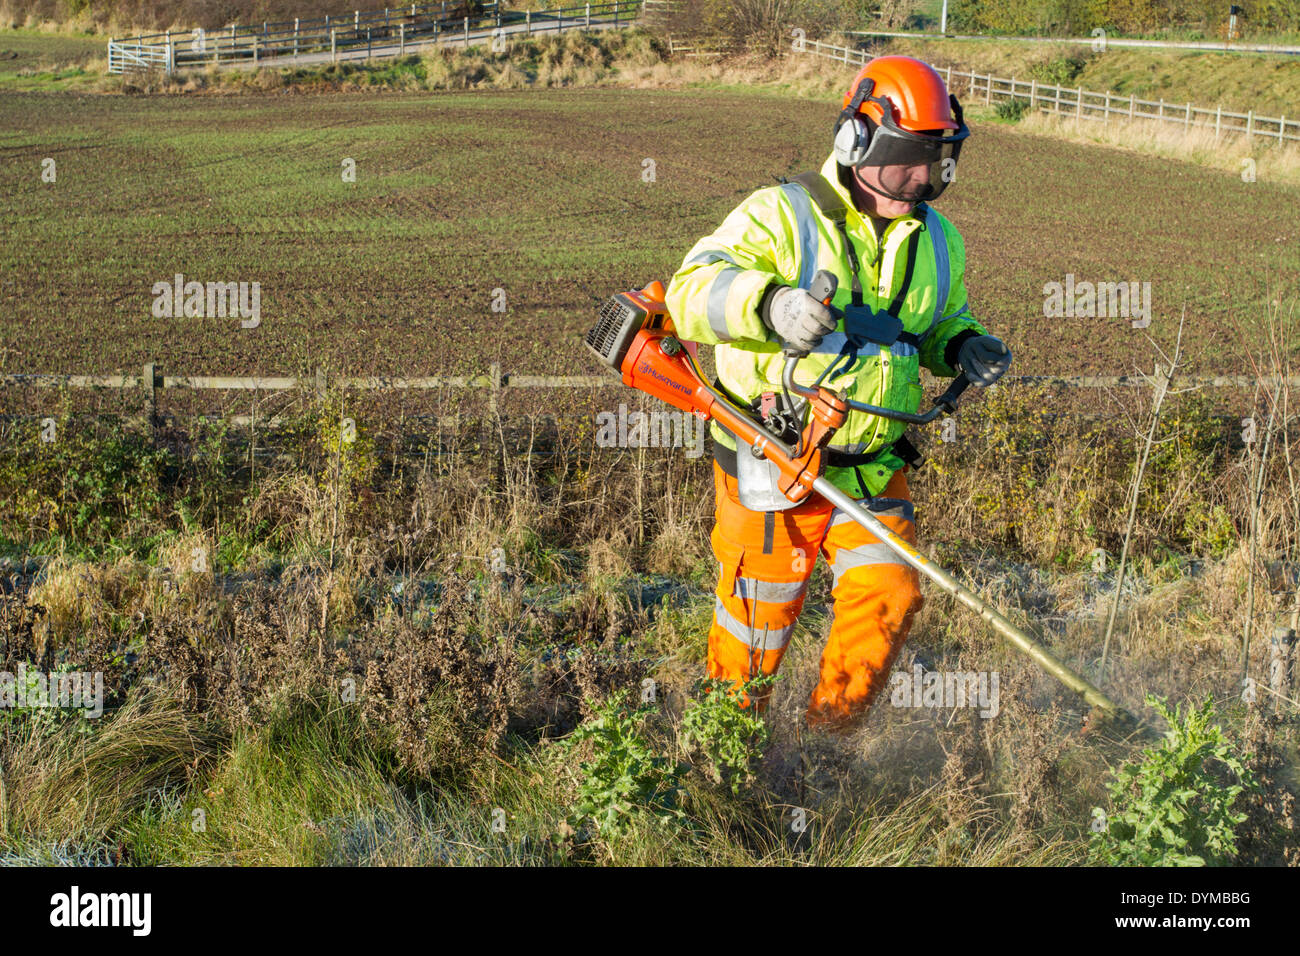 Strimming pasto largo. Hombre utilizando un strimmer y cortando el pasto y la maleza en un camino verge, Nottinghamshire, Inglaterra, Reino Unido. Foto de stock